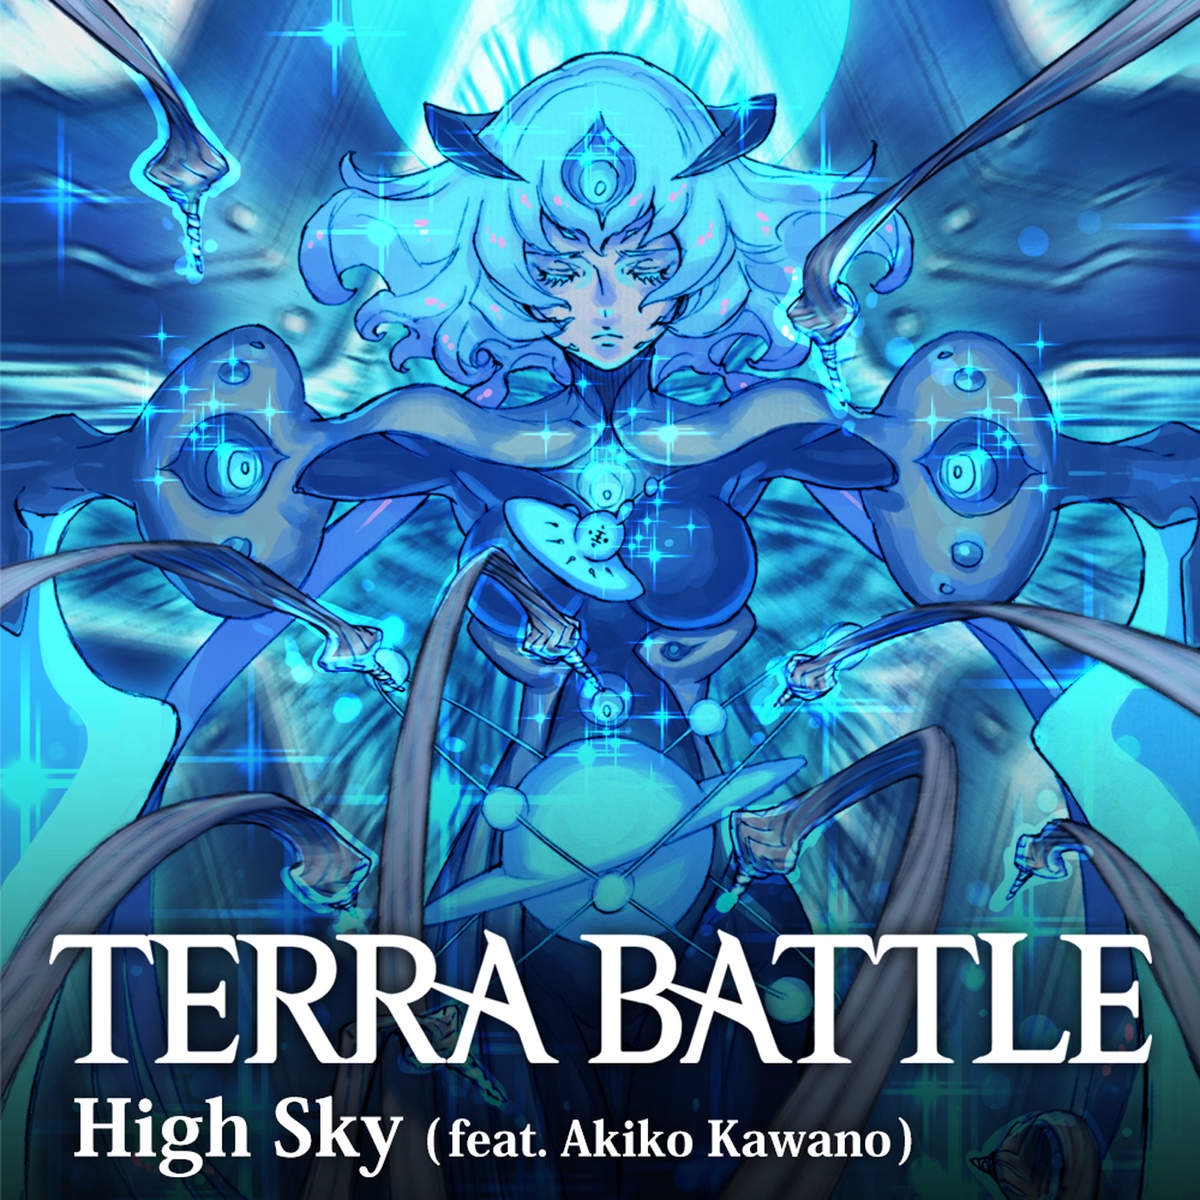 High Sky (feat. Akiko Kawano) from Terra Battle